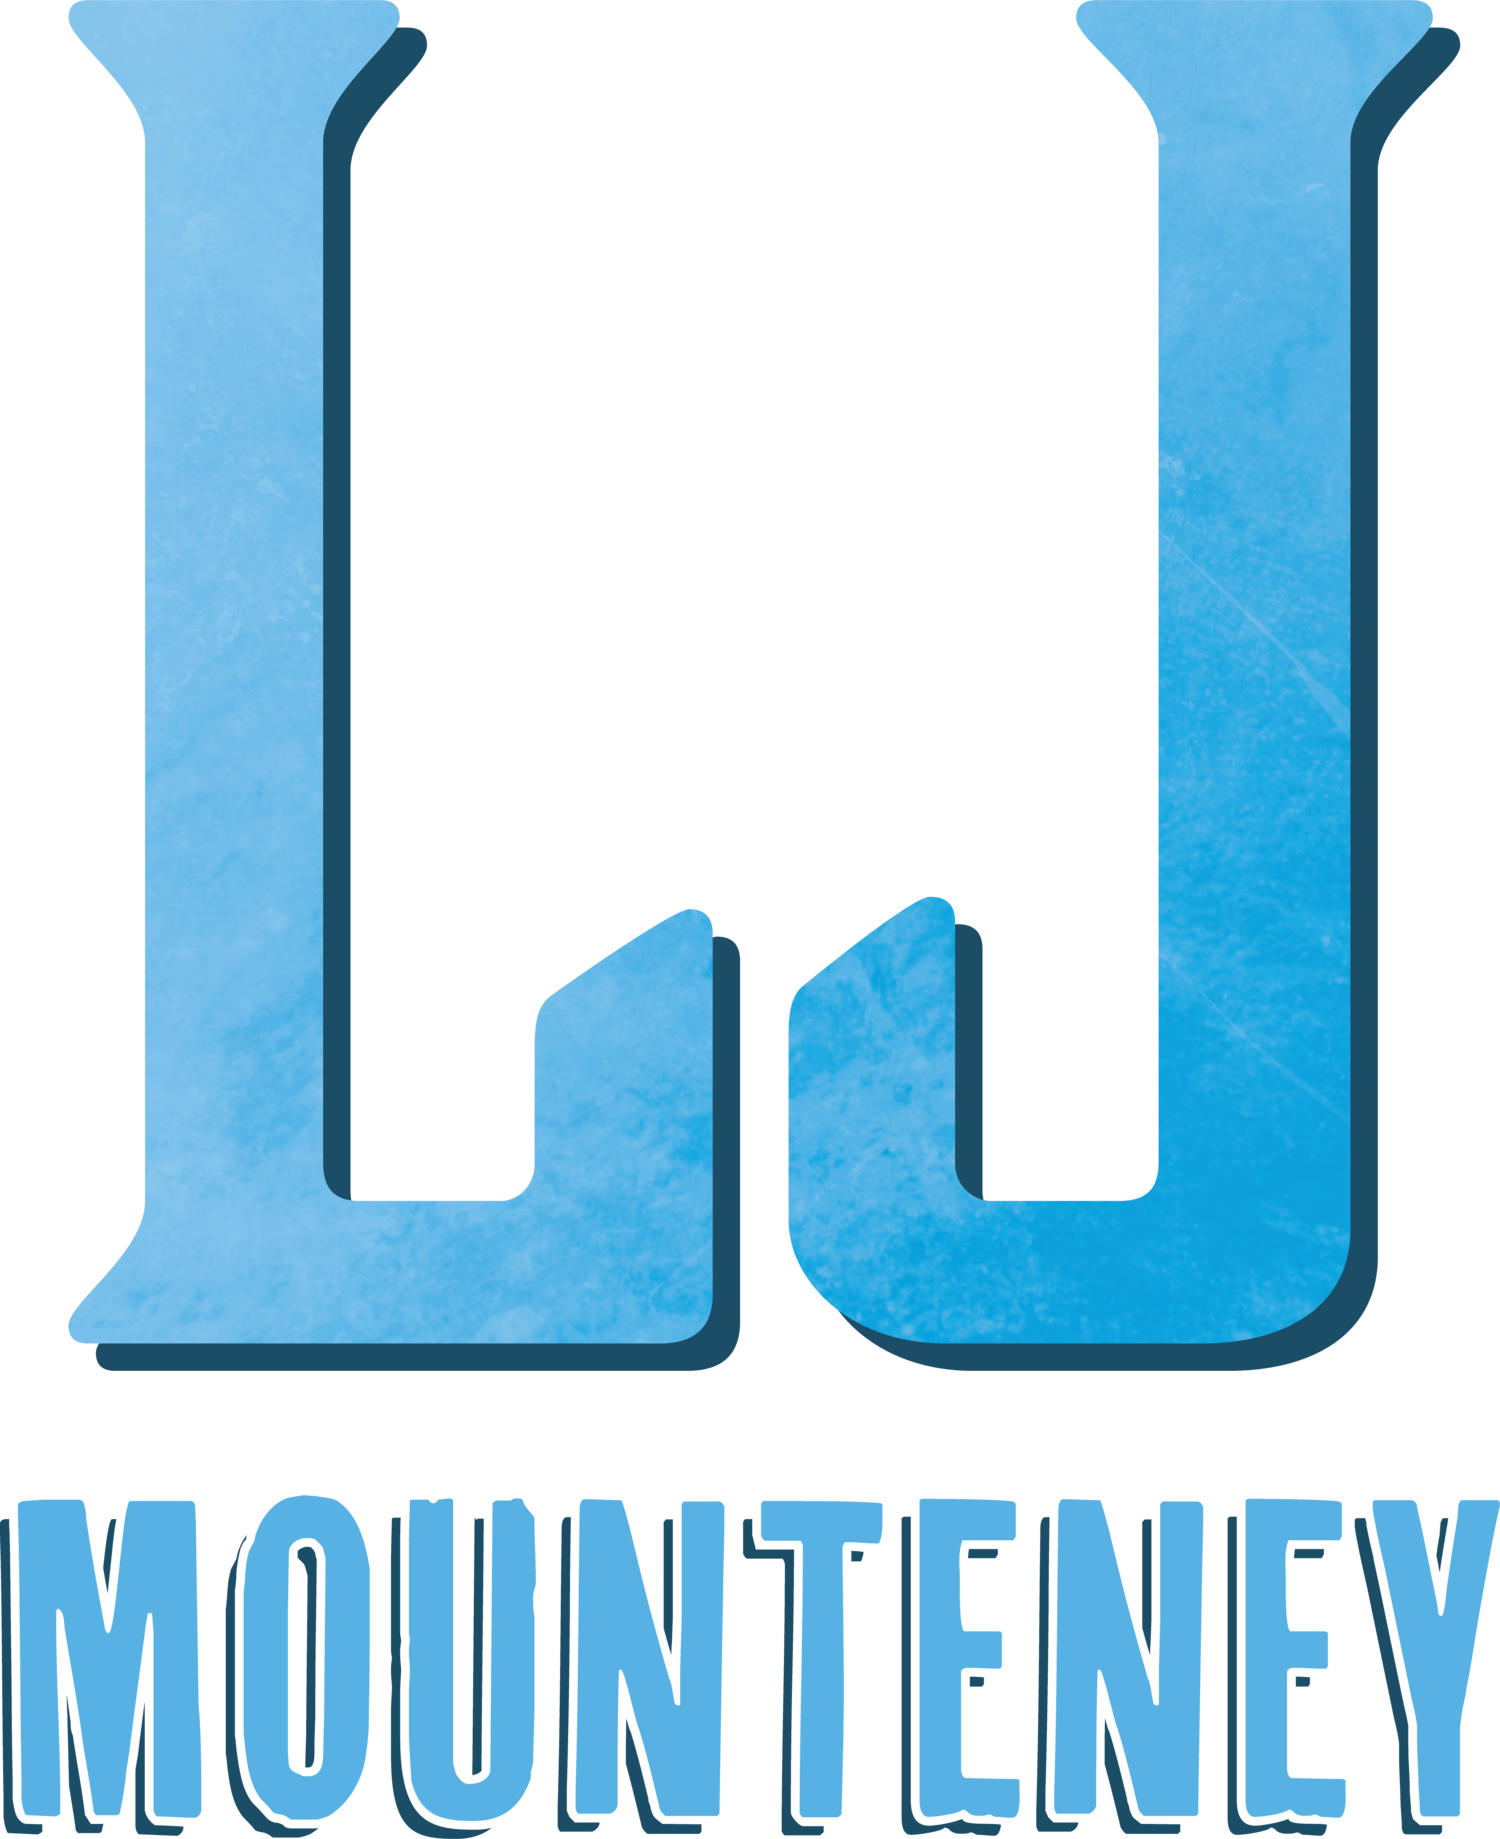 LJ Mounteney